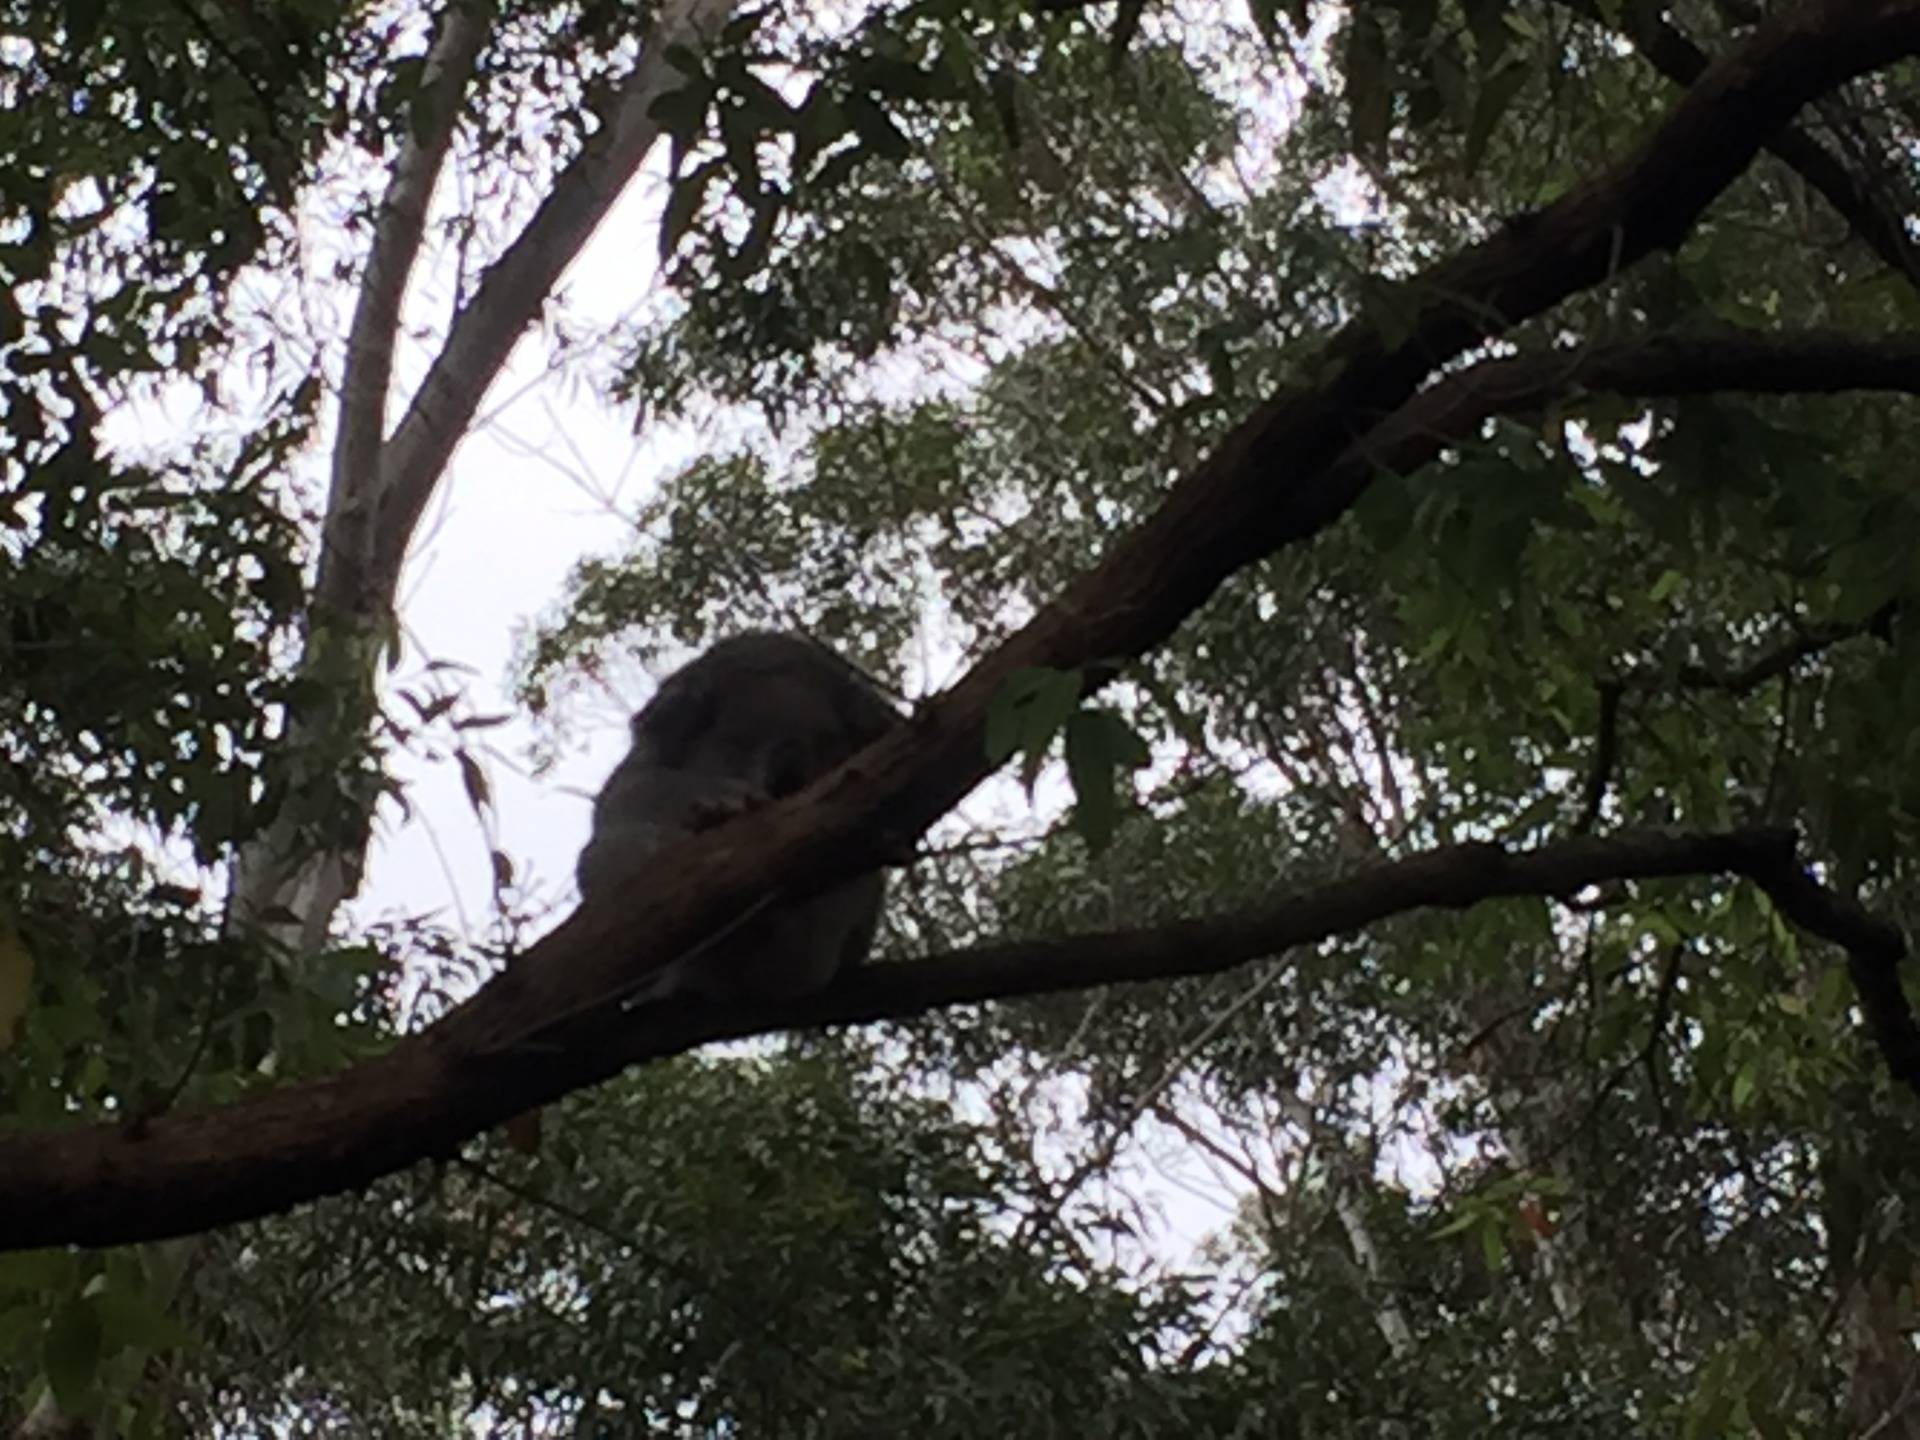 A sleeping koala perched on a tree